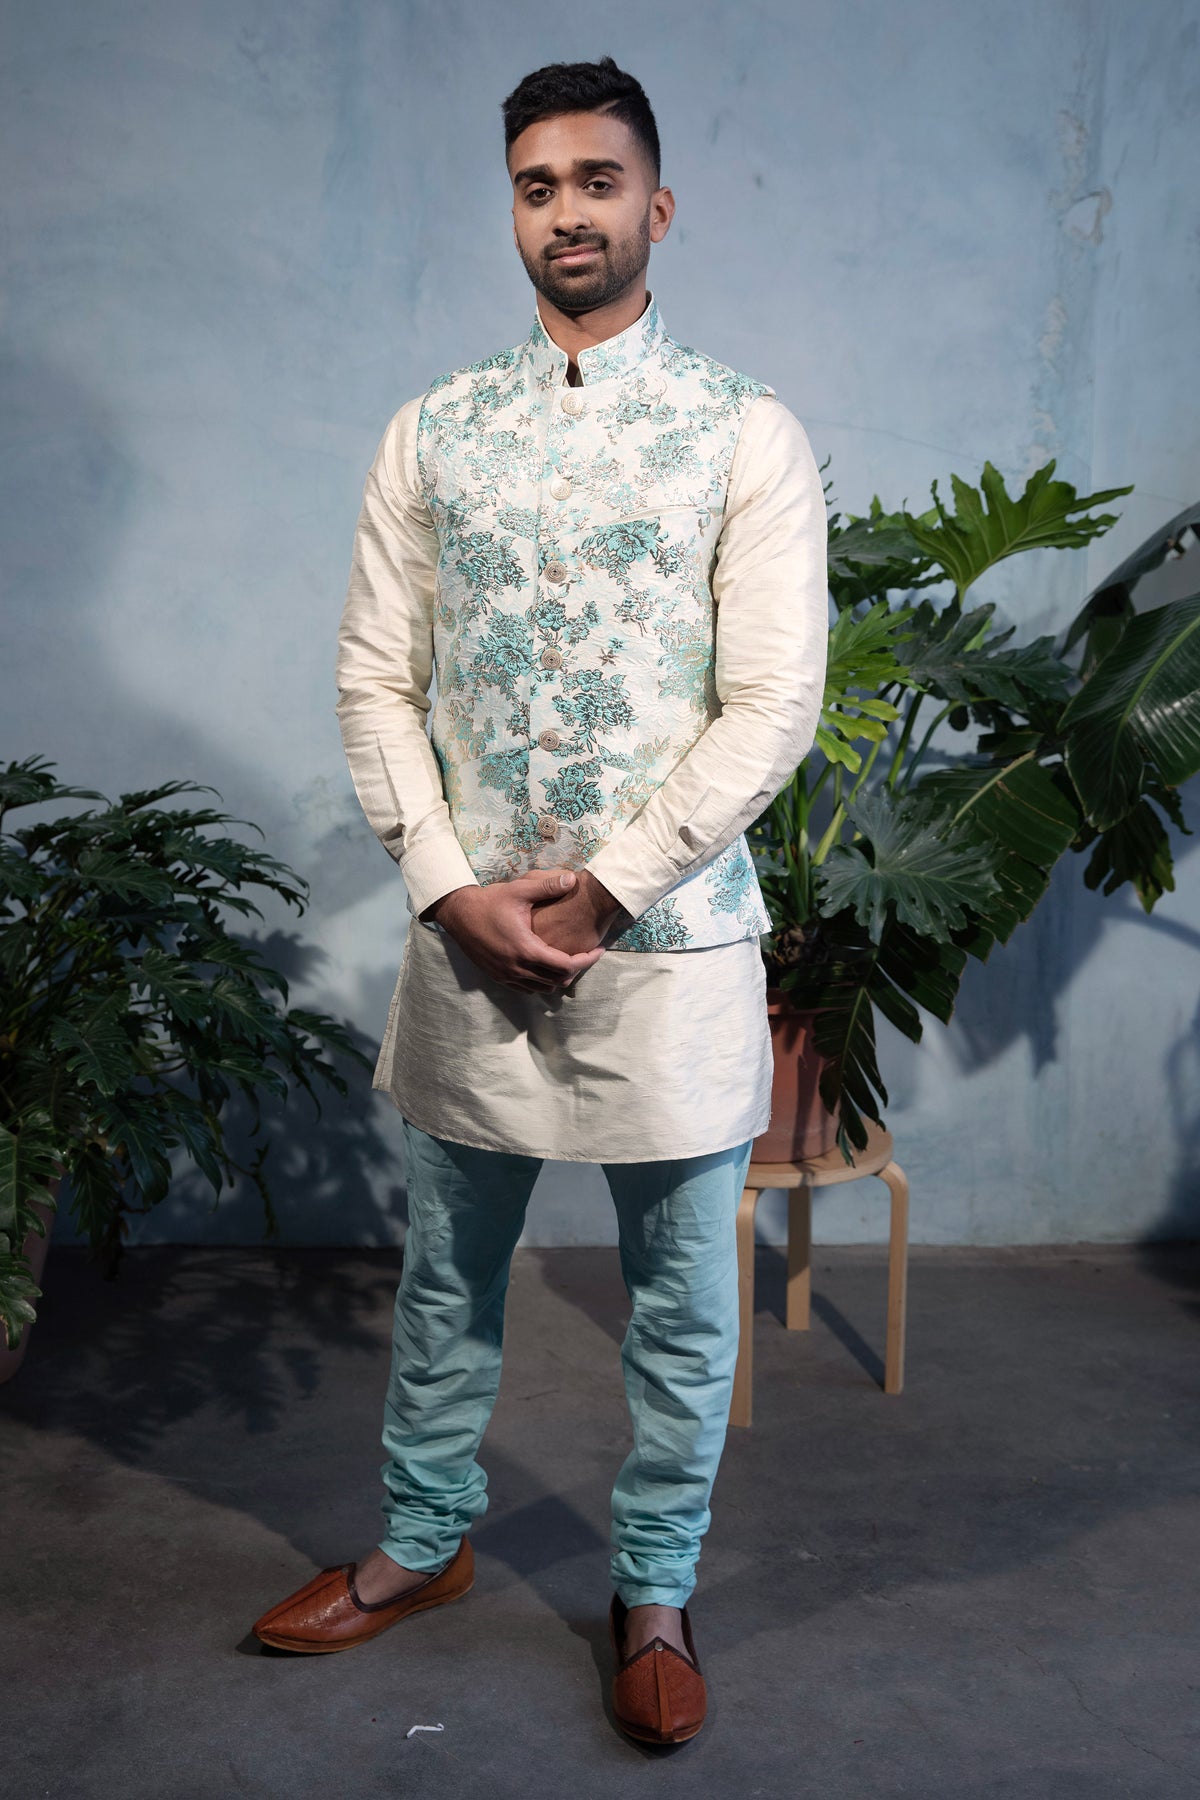 JAG Cotton Pajama Pant - Front View - Harleen Kaur - South Asian Menswear